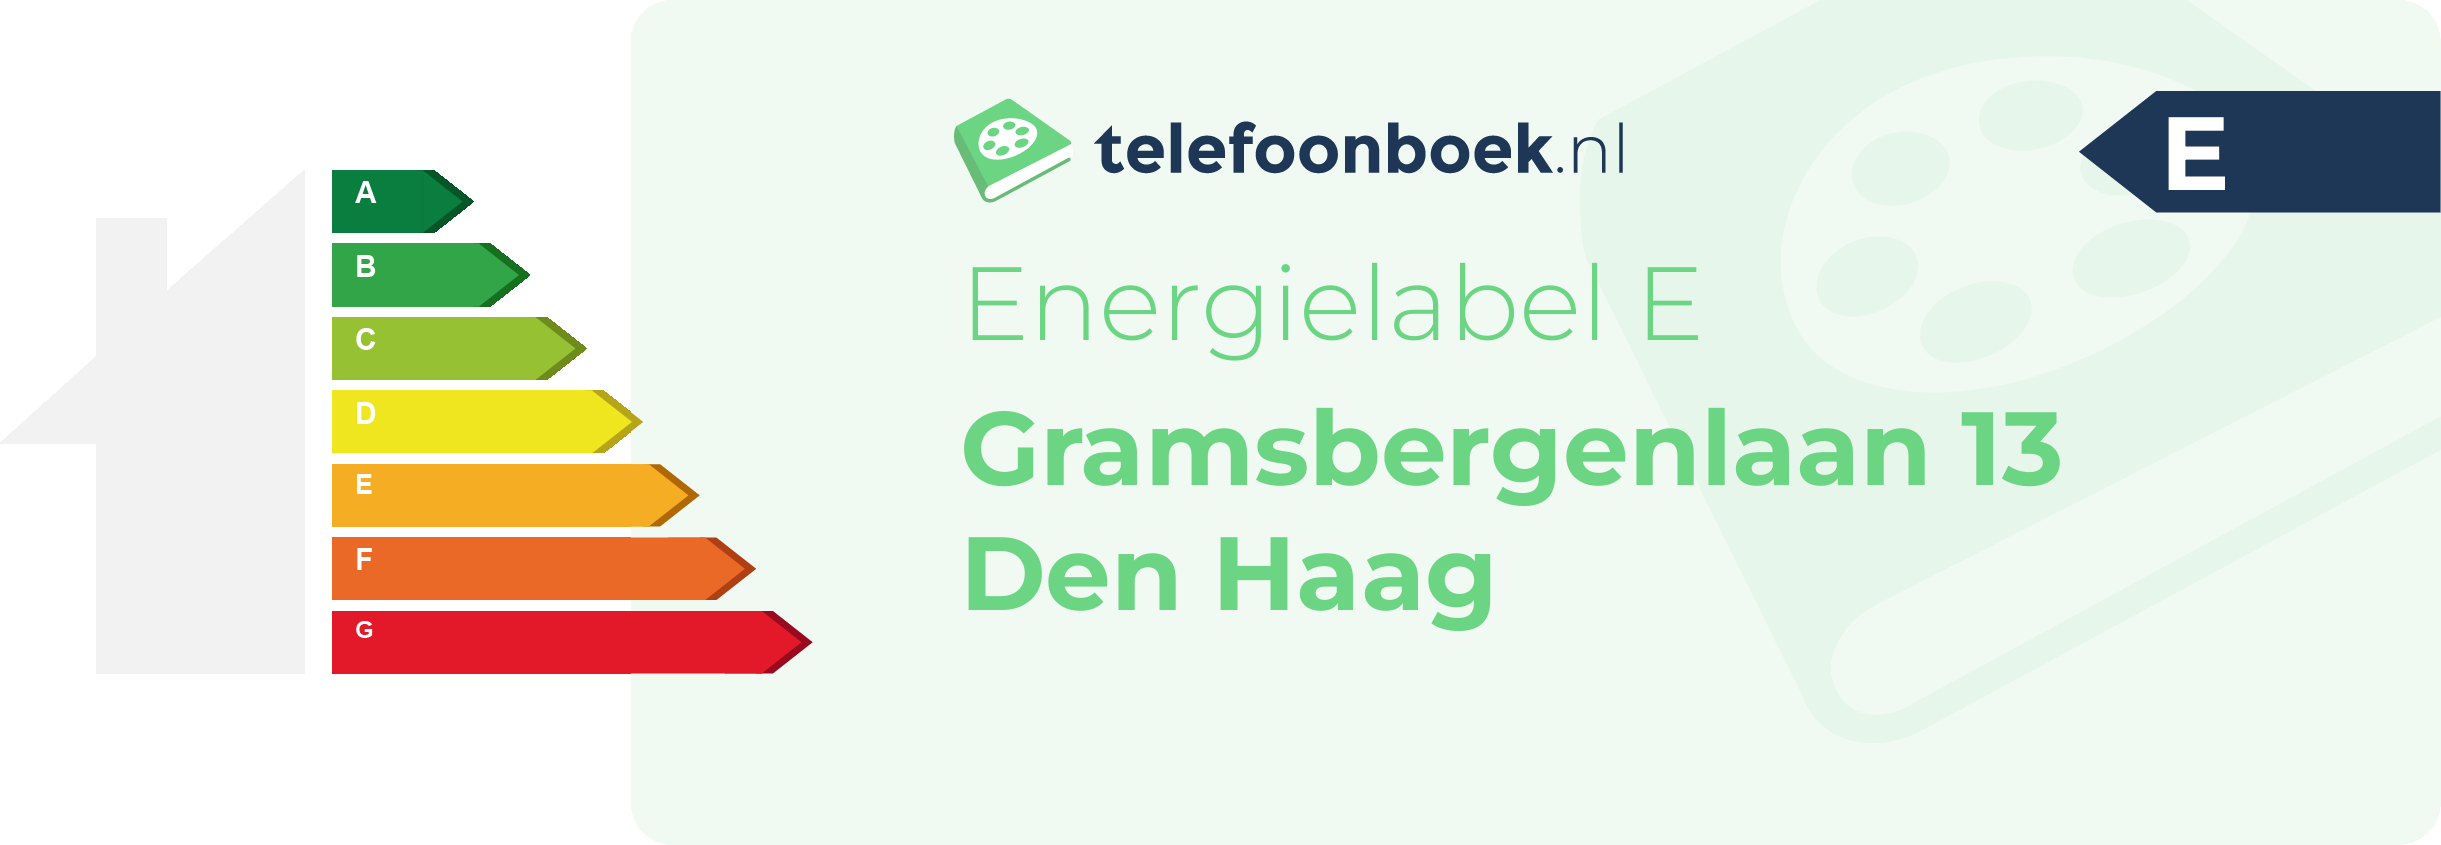 Energielabel Gramsbergenlaan 13 Den Haag